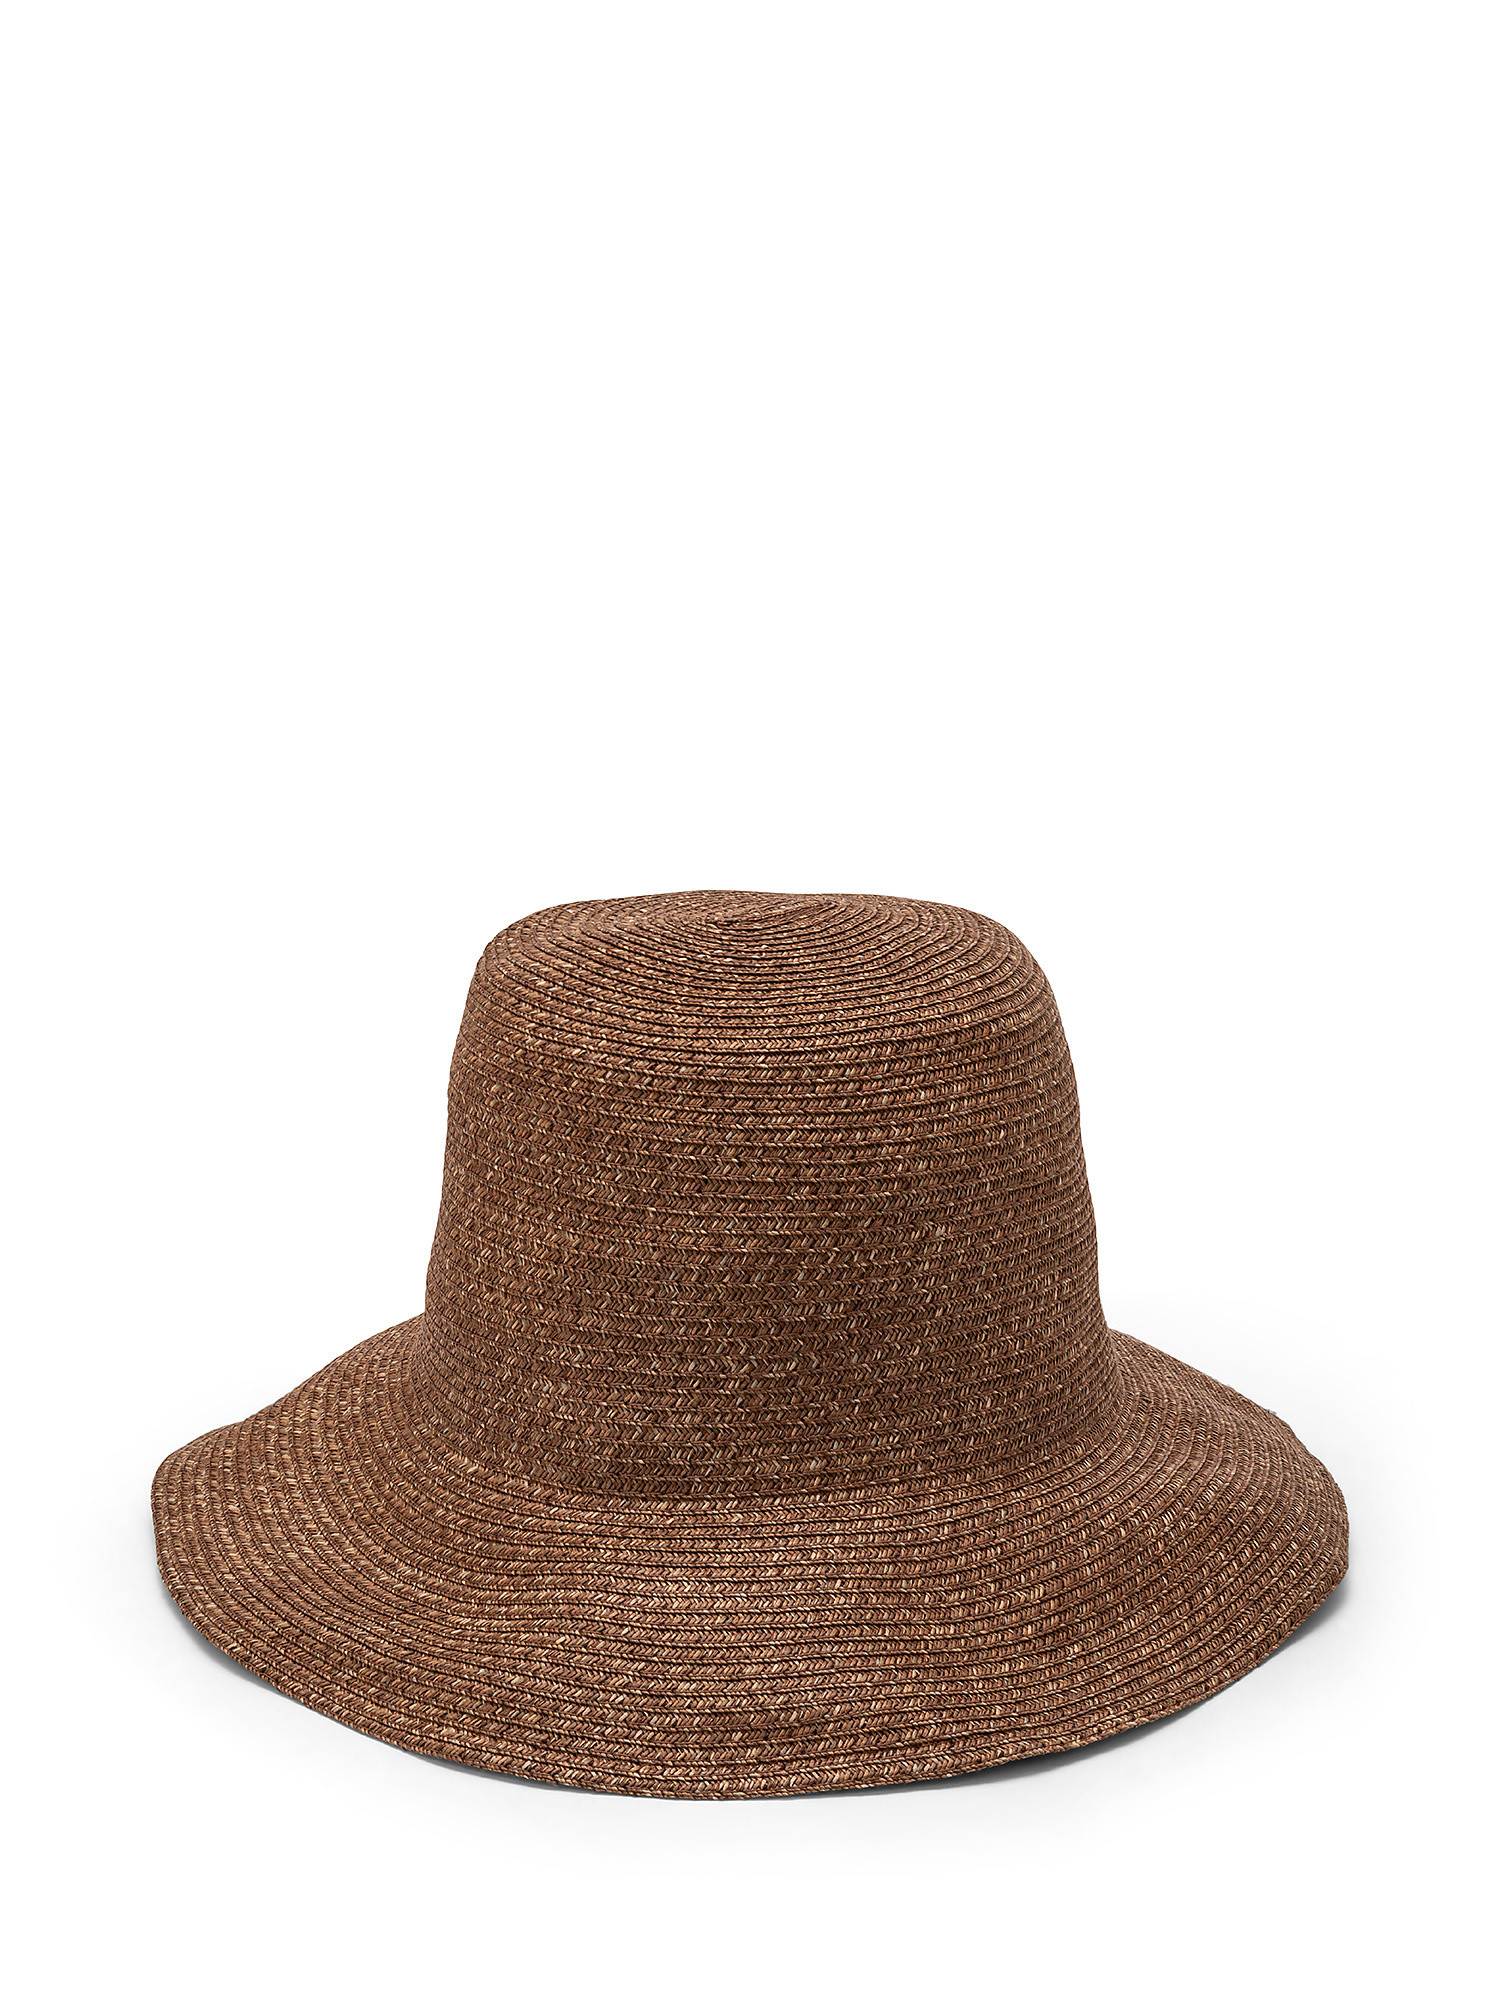 Wide brim hat, Dark Brown, large image number 0